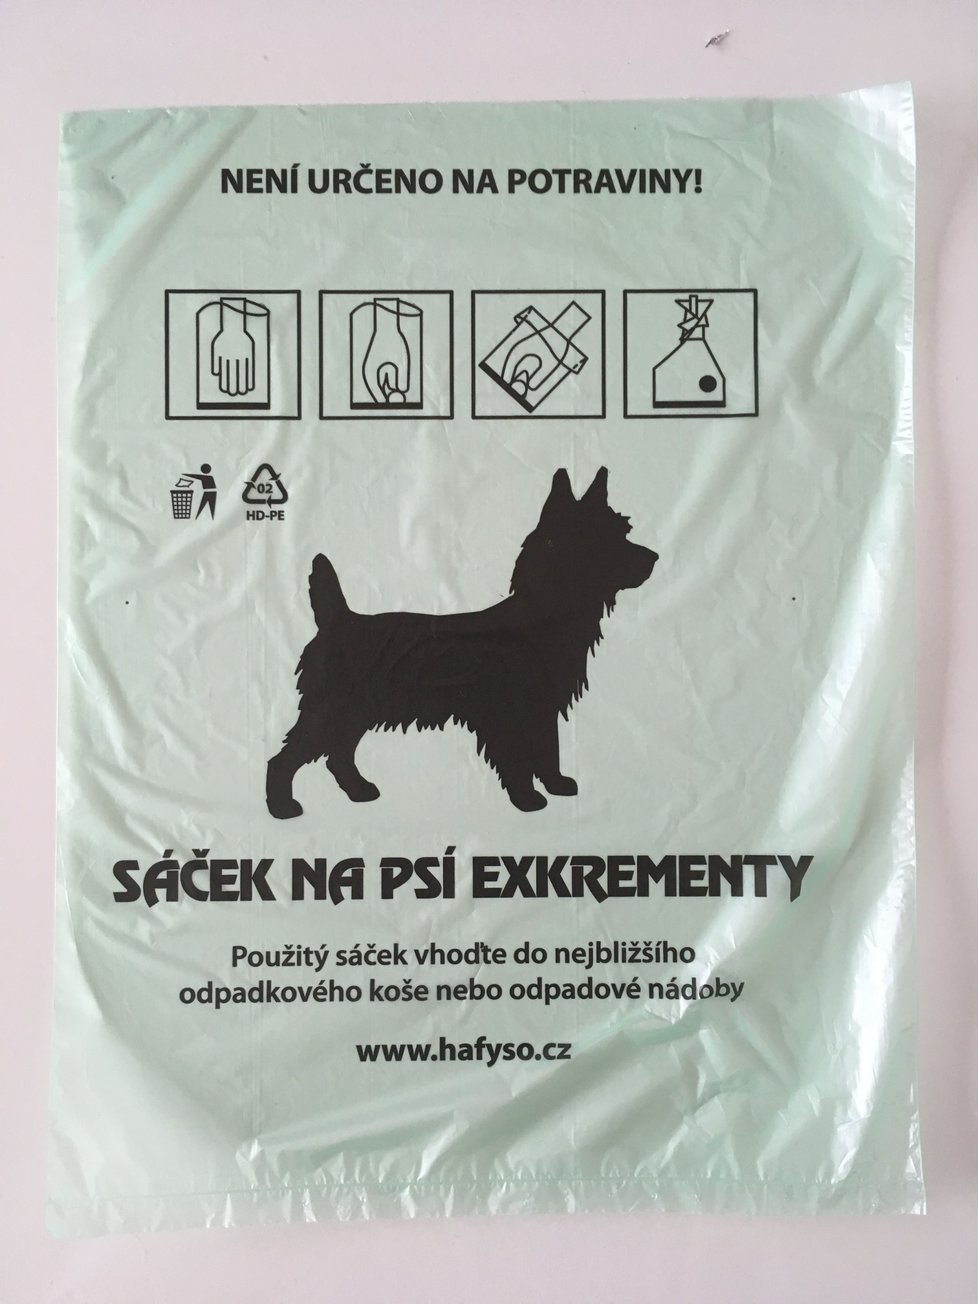 Řádně vyhozené exkrementy pražských psů končí ve spalovně, vzniká z nich energie.